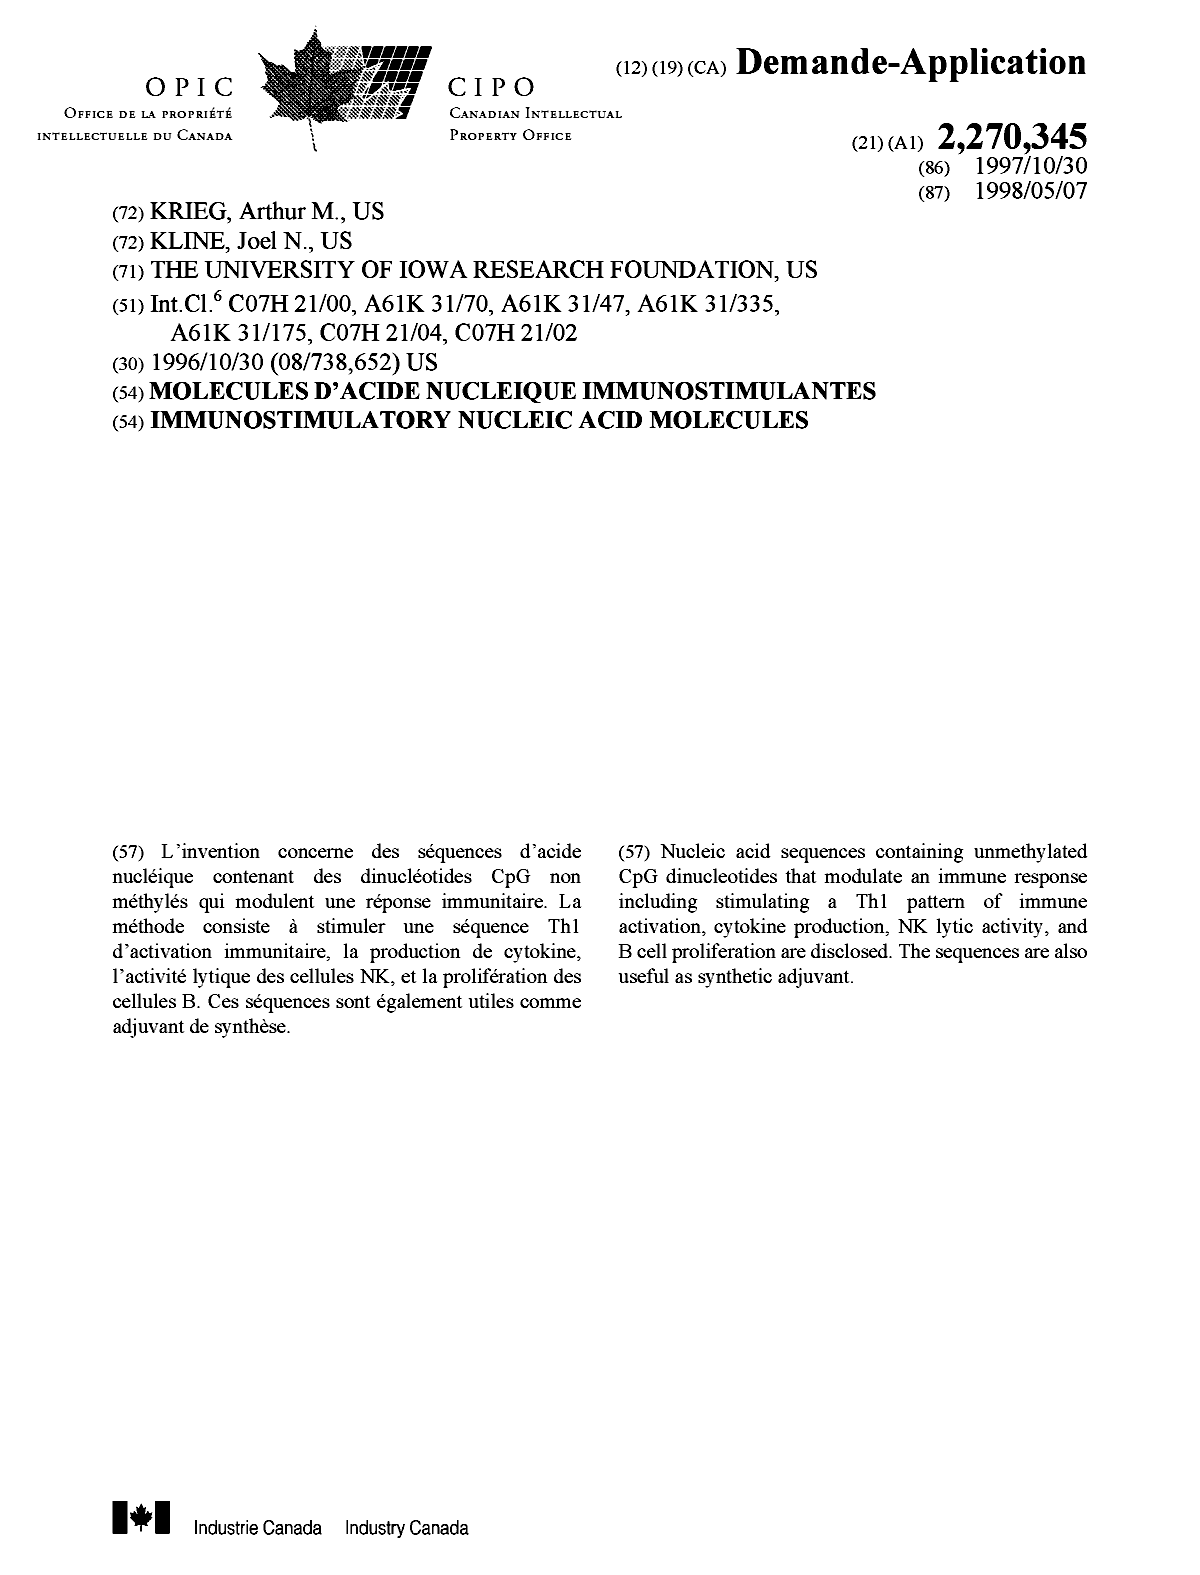 Document de brevet canadien 2270345. Page couverture 19990630. Image 1 de 1